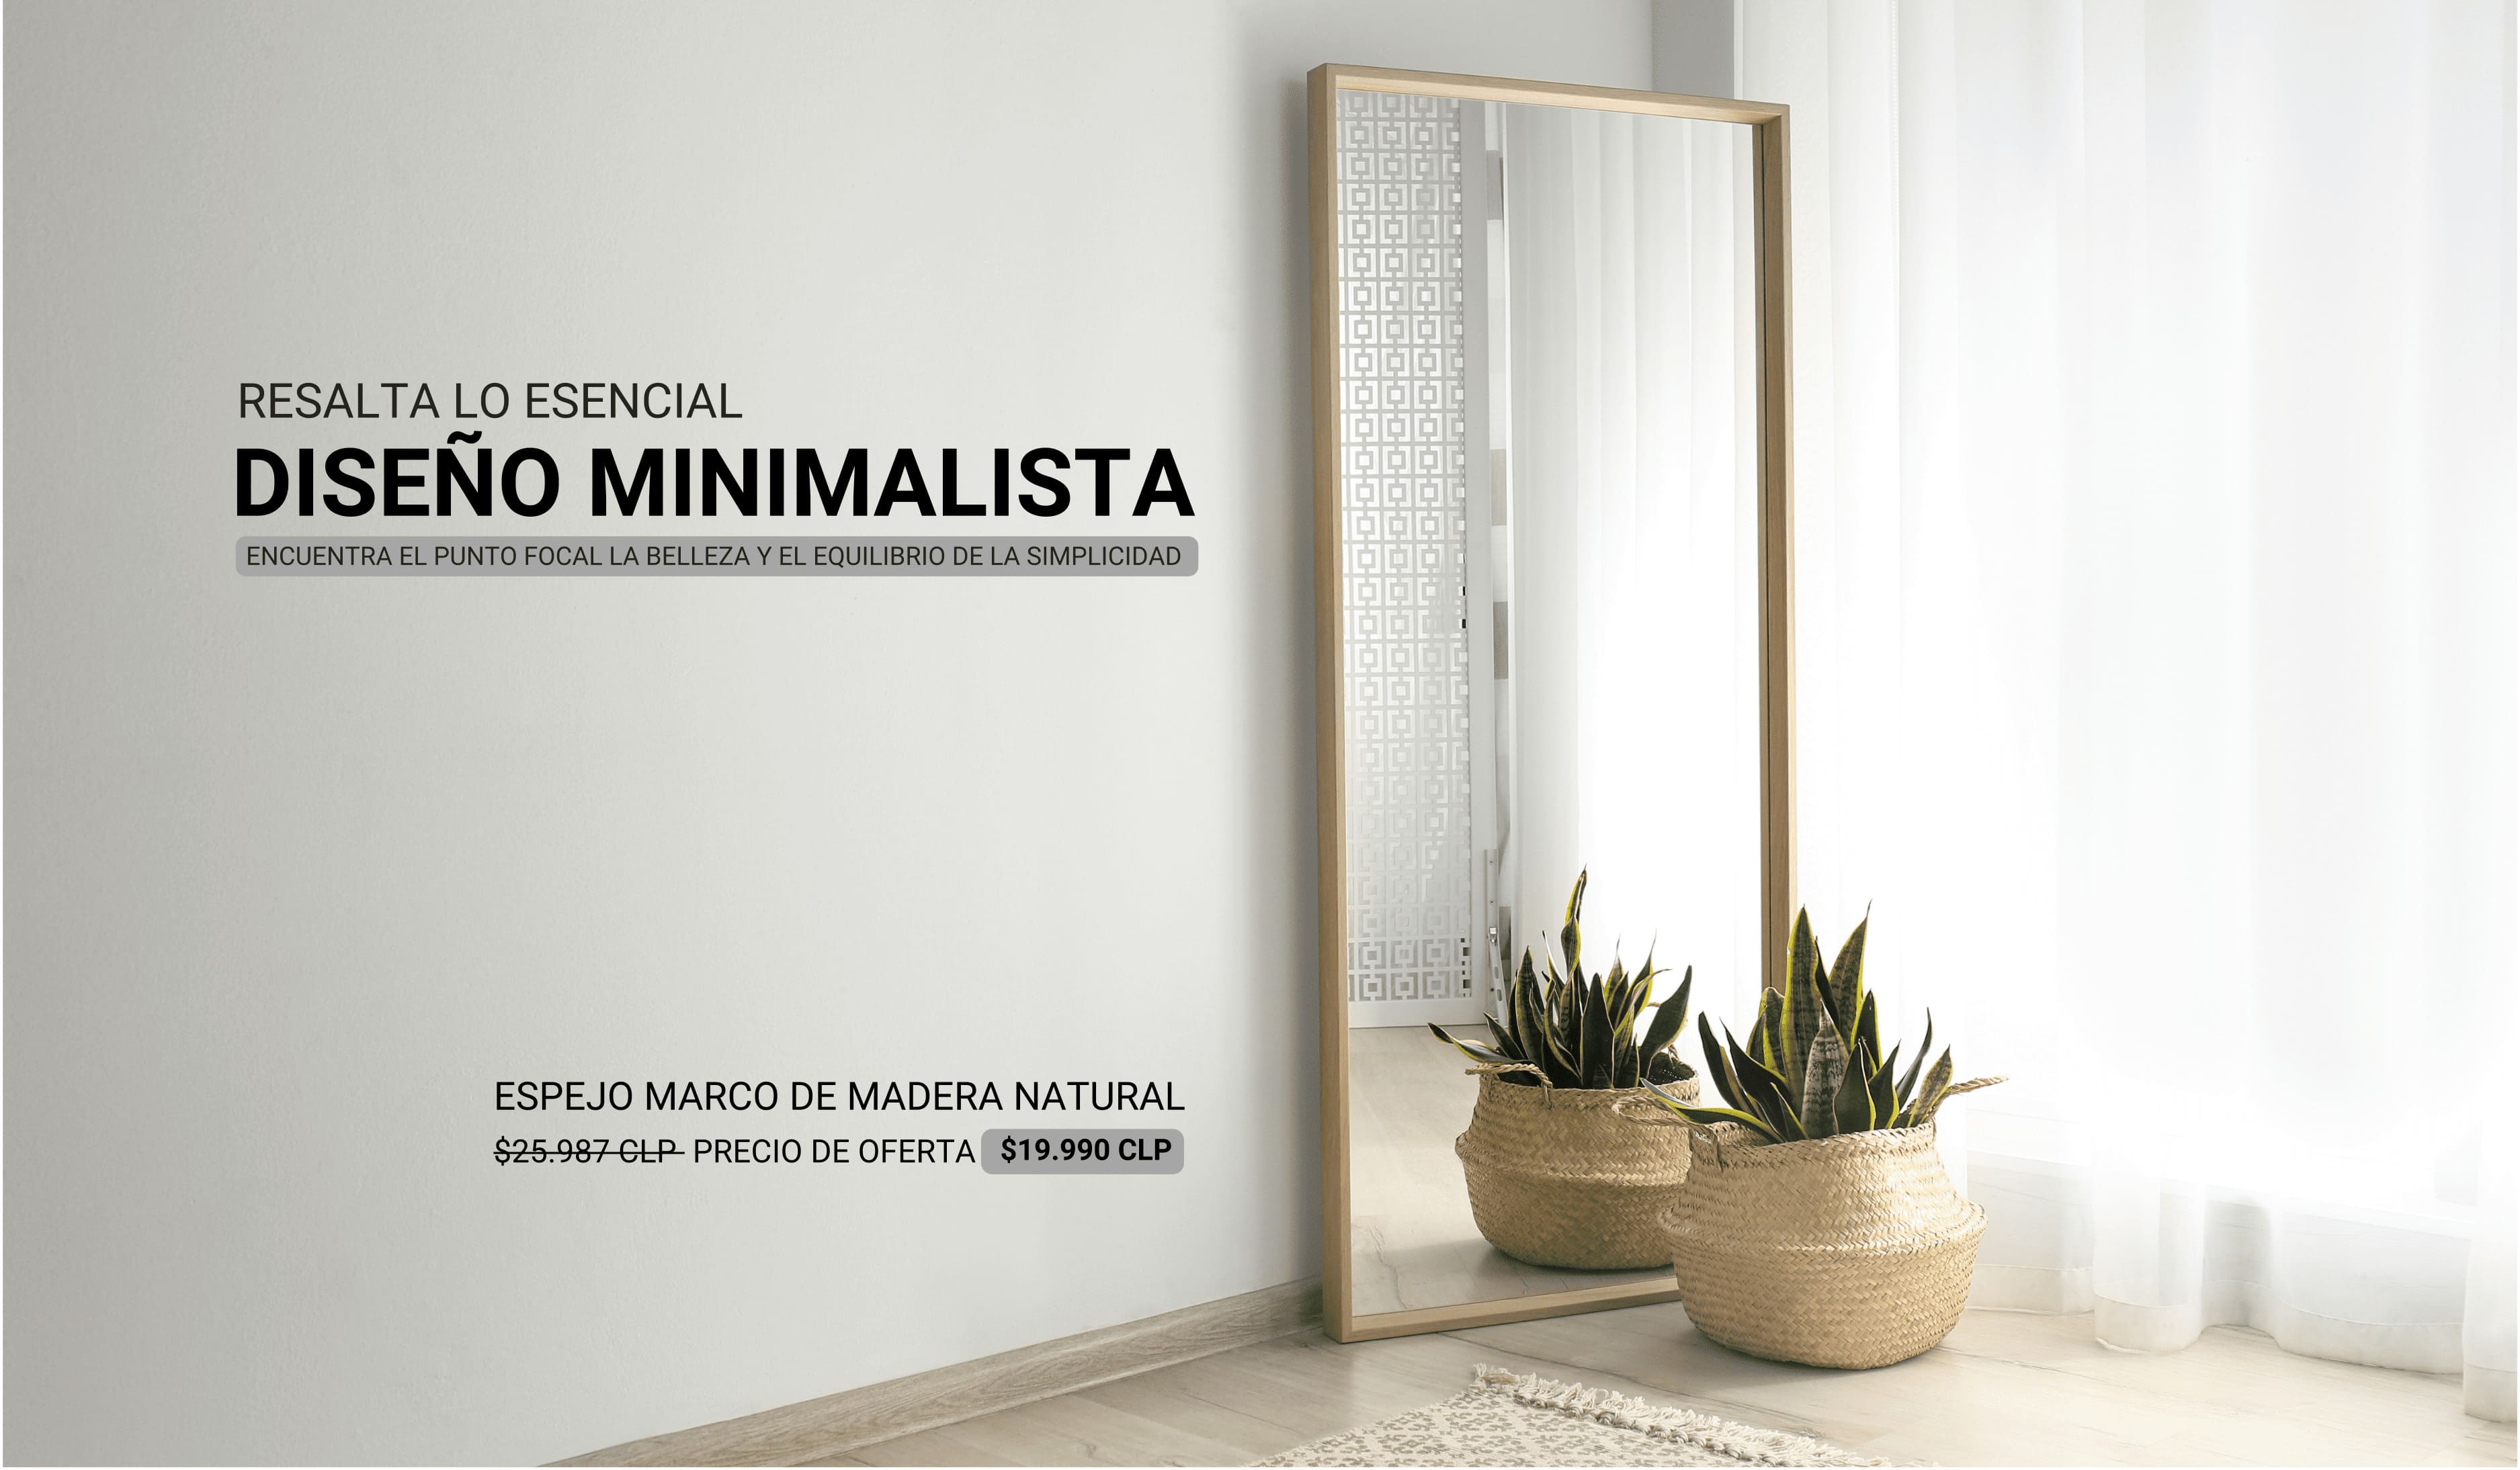 Espejos con diseños minimalista desde 19.990